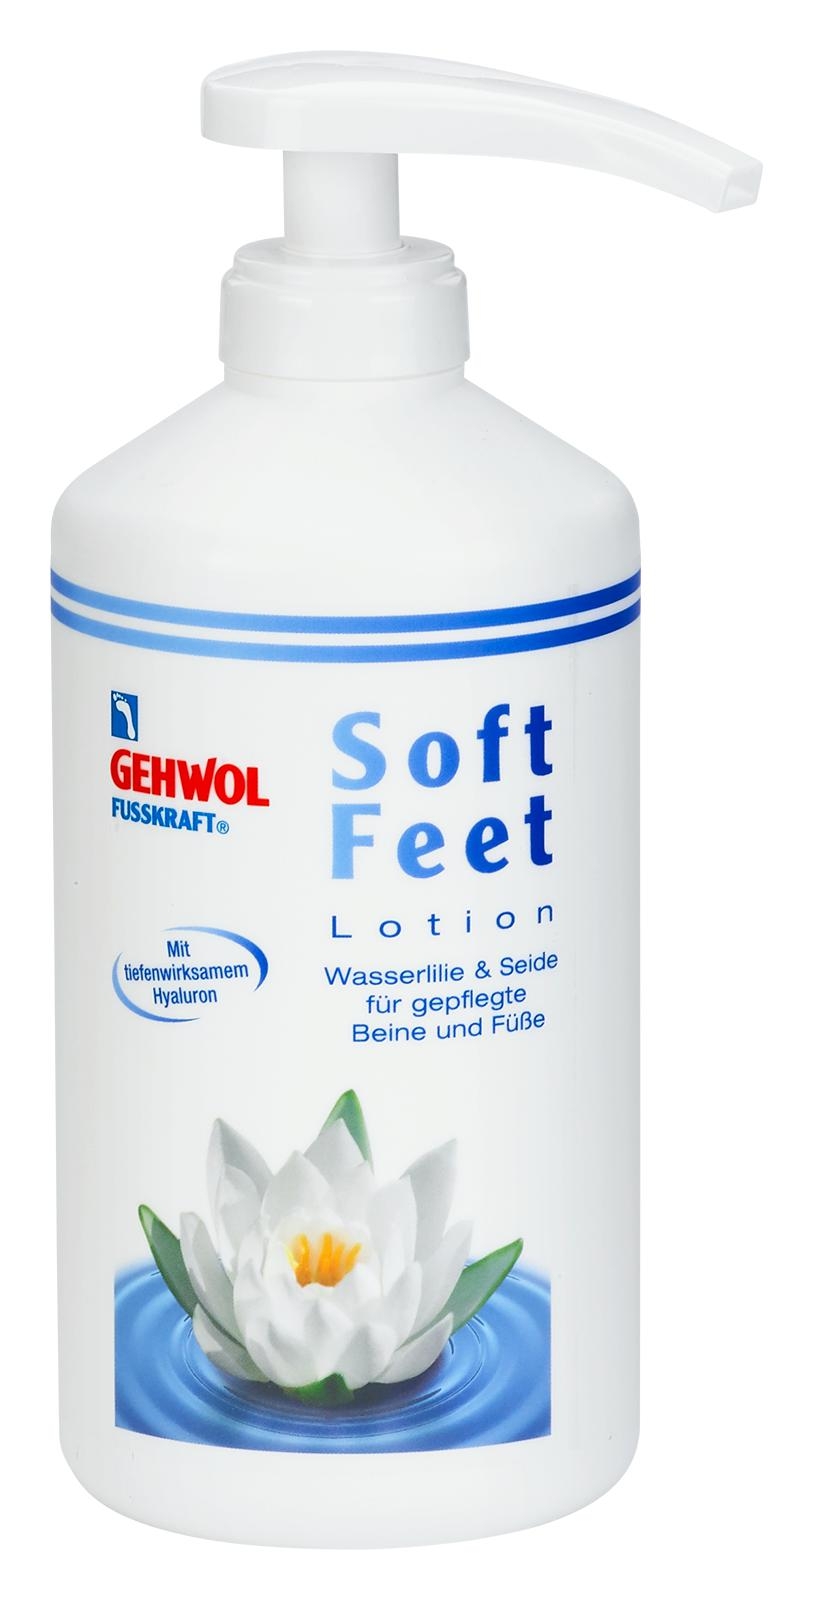 GEHWOL FUSSKRAFT Soft Feet Lotion 500 ml